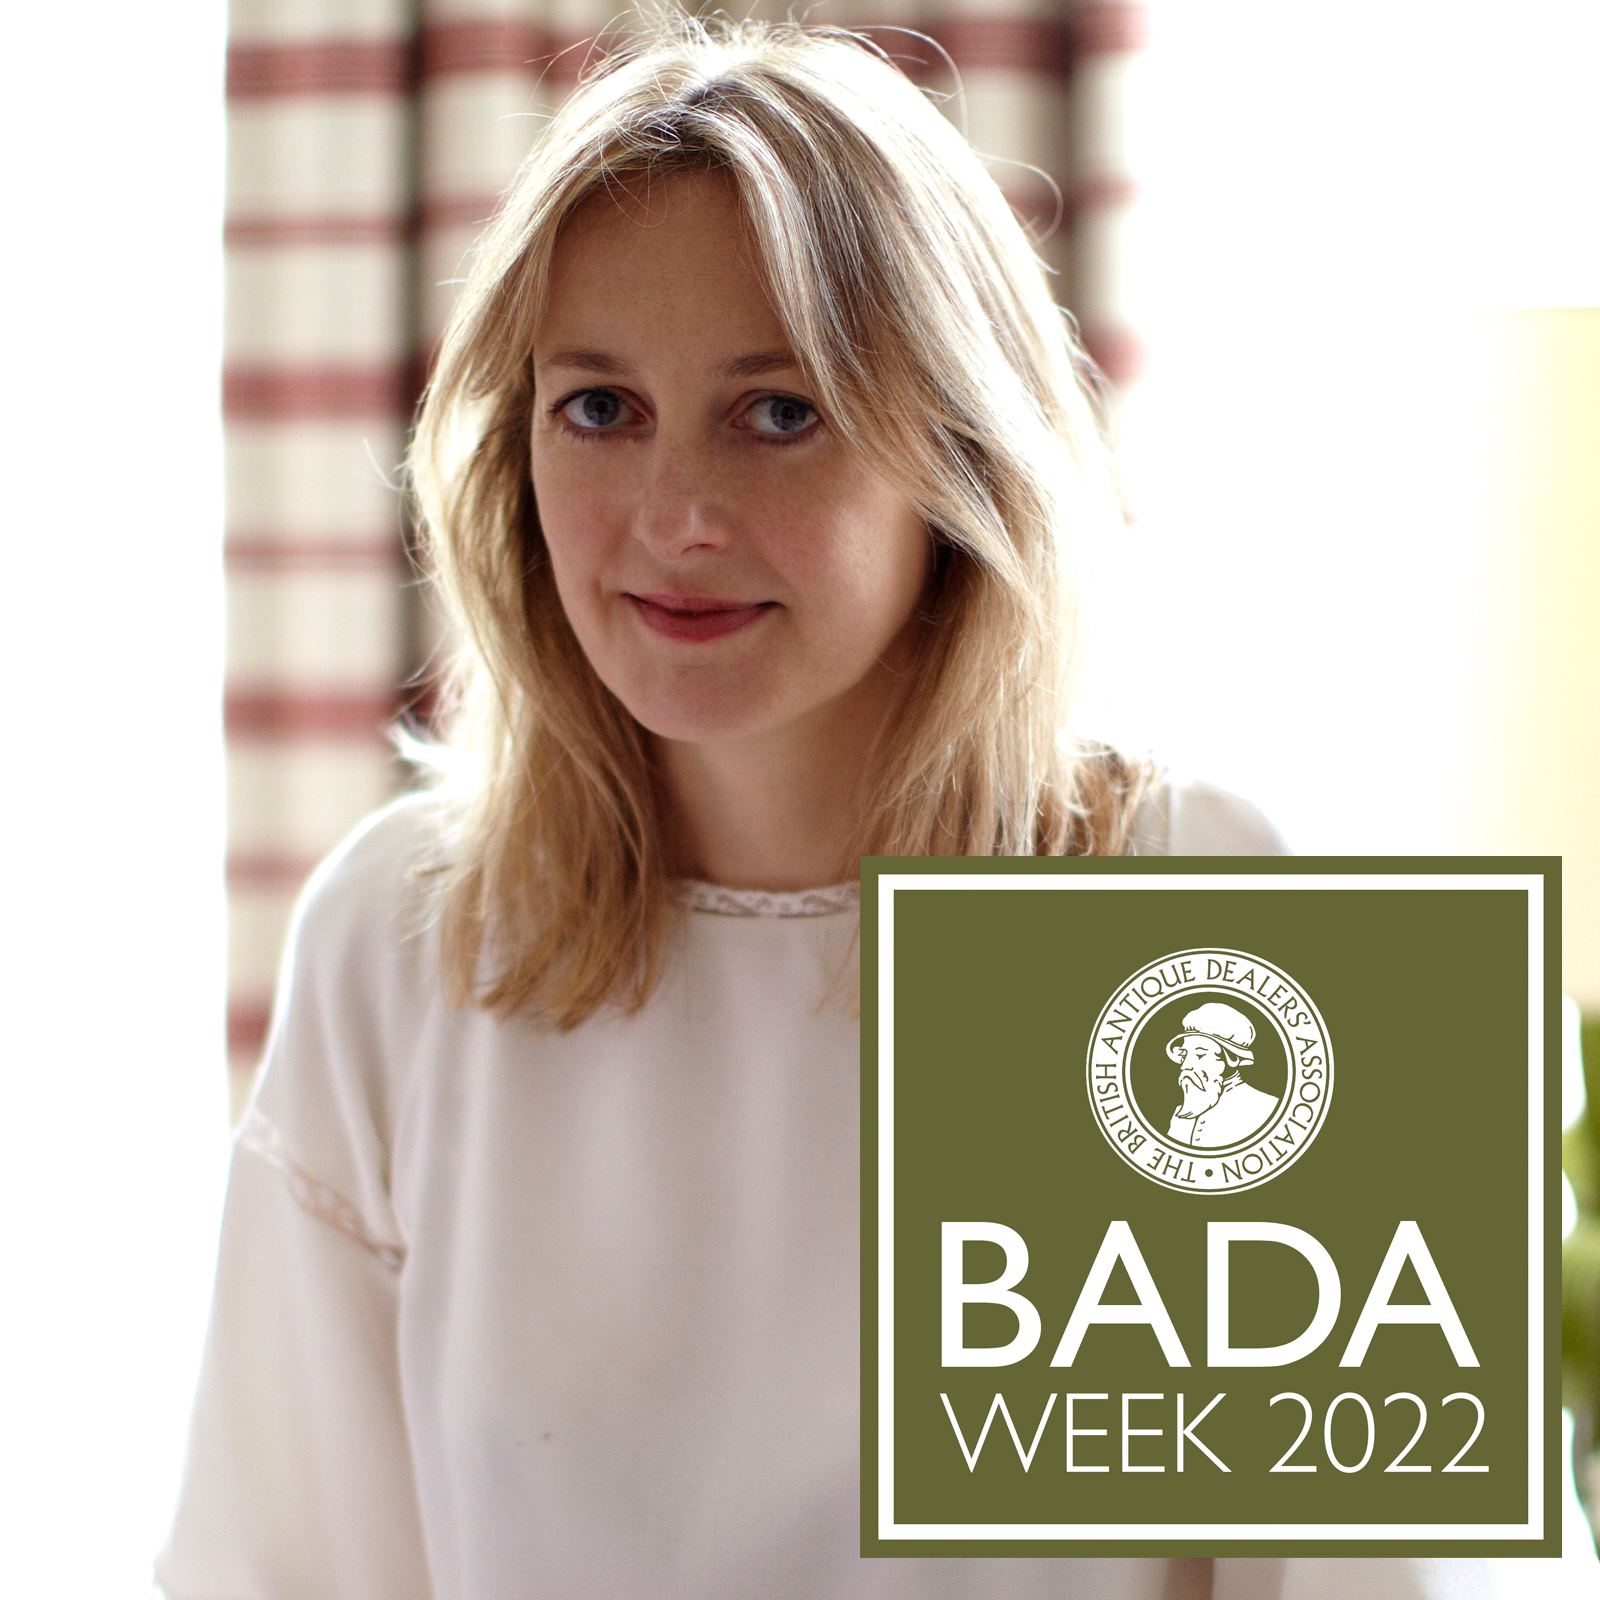 BADA Week 2022 - Items chosen by Rita Konig